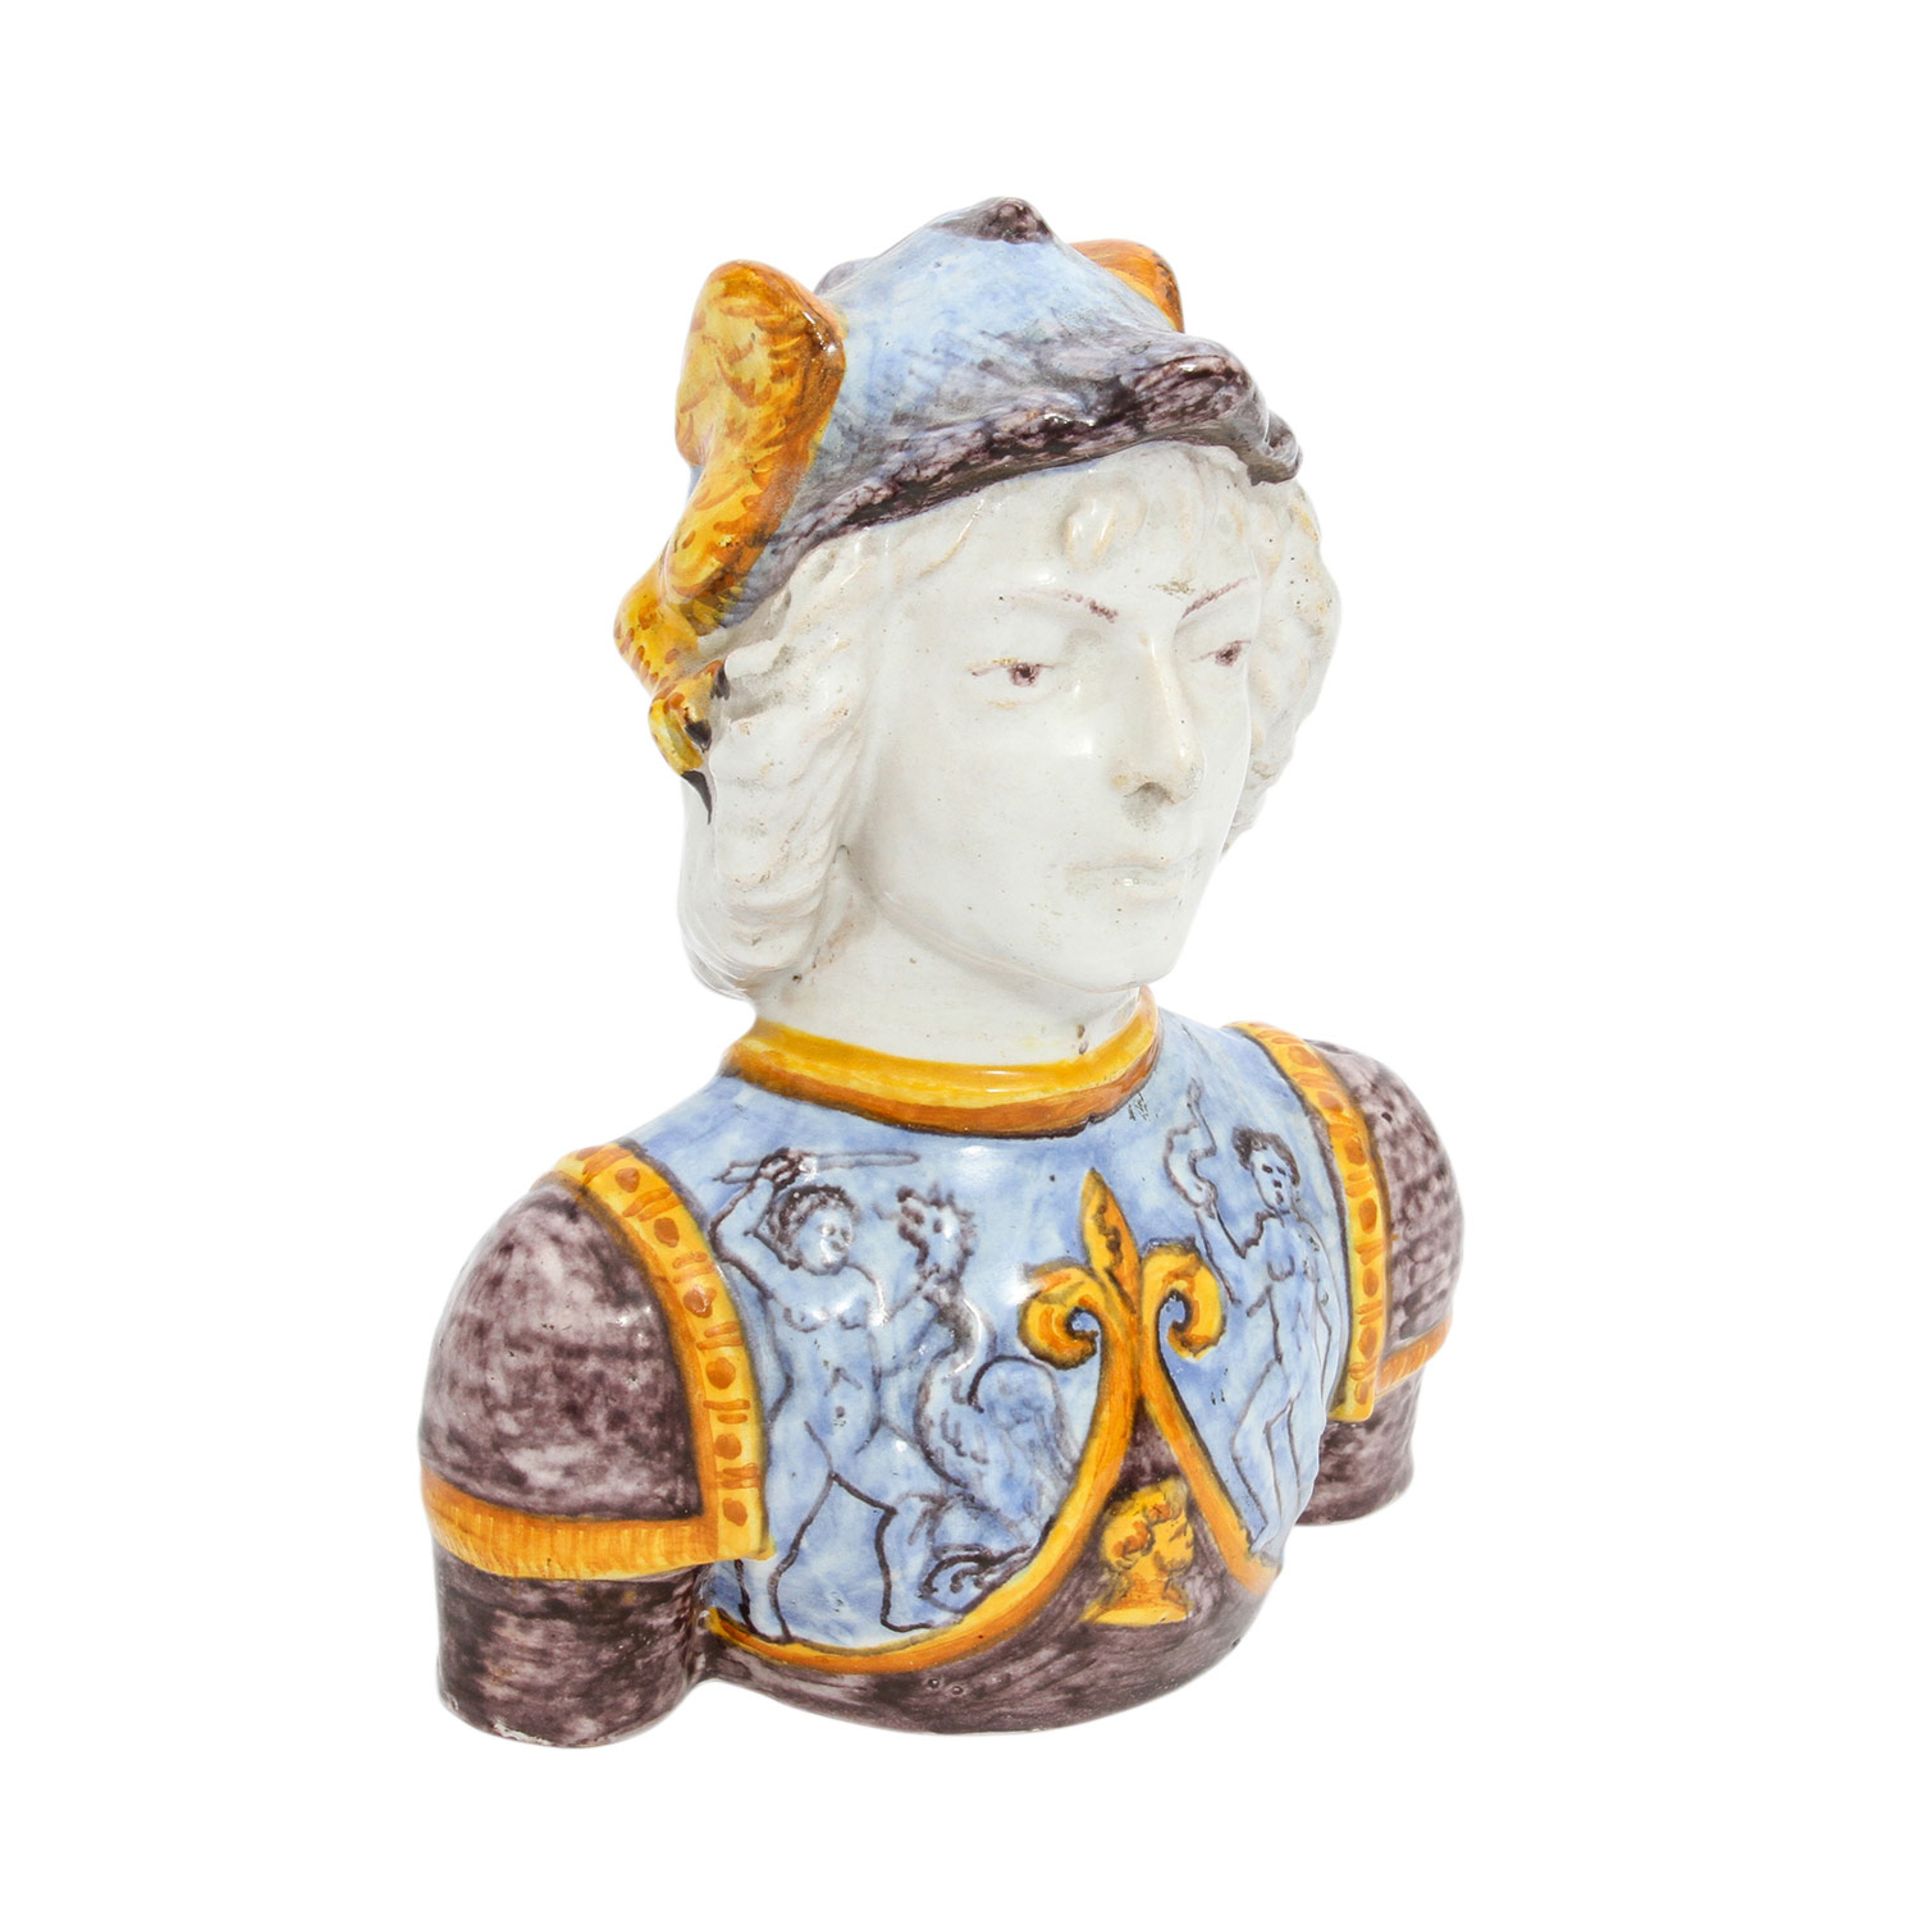 Büste eines Kriegers, 19./20. Jh. Grau-brauner Scherben, Darstellung eines jungen Mannes mit Helm